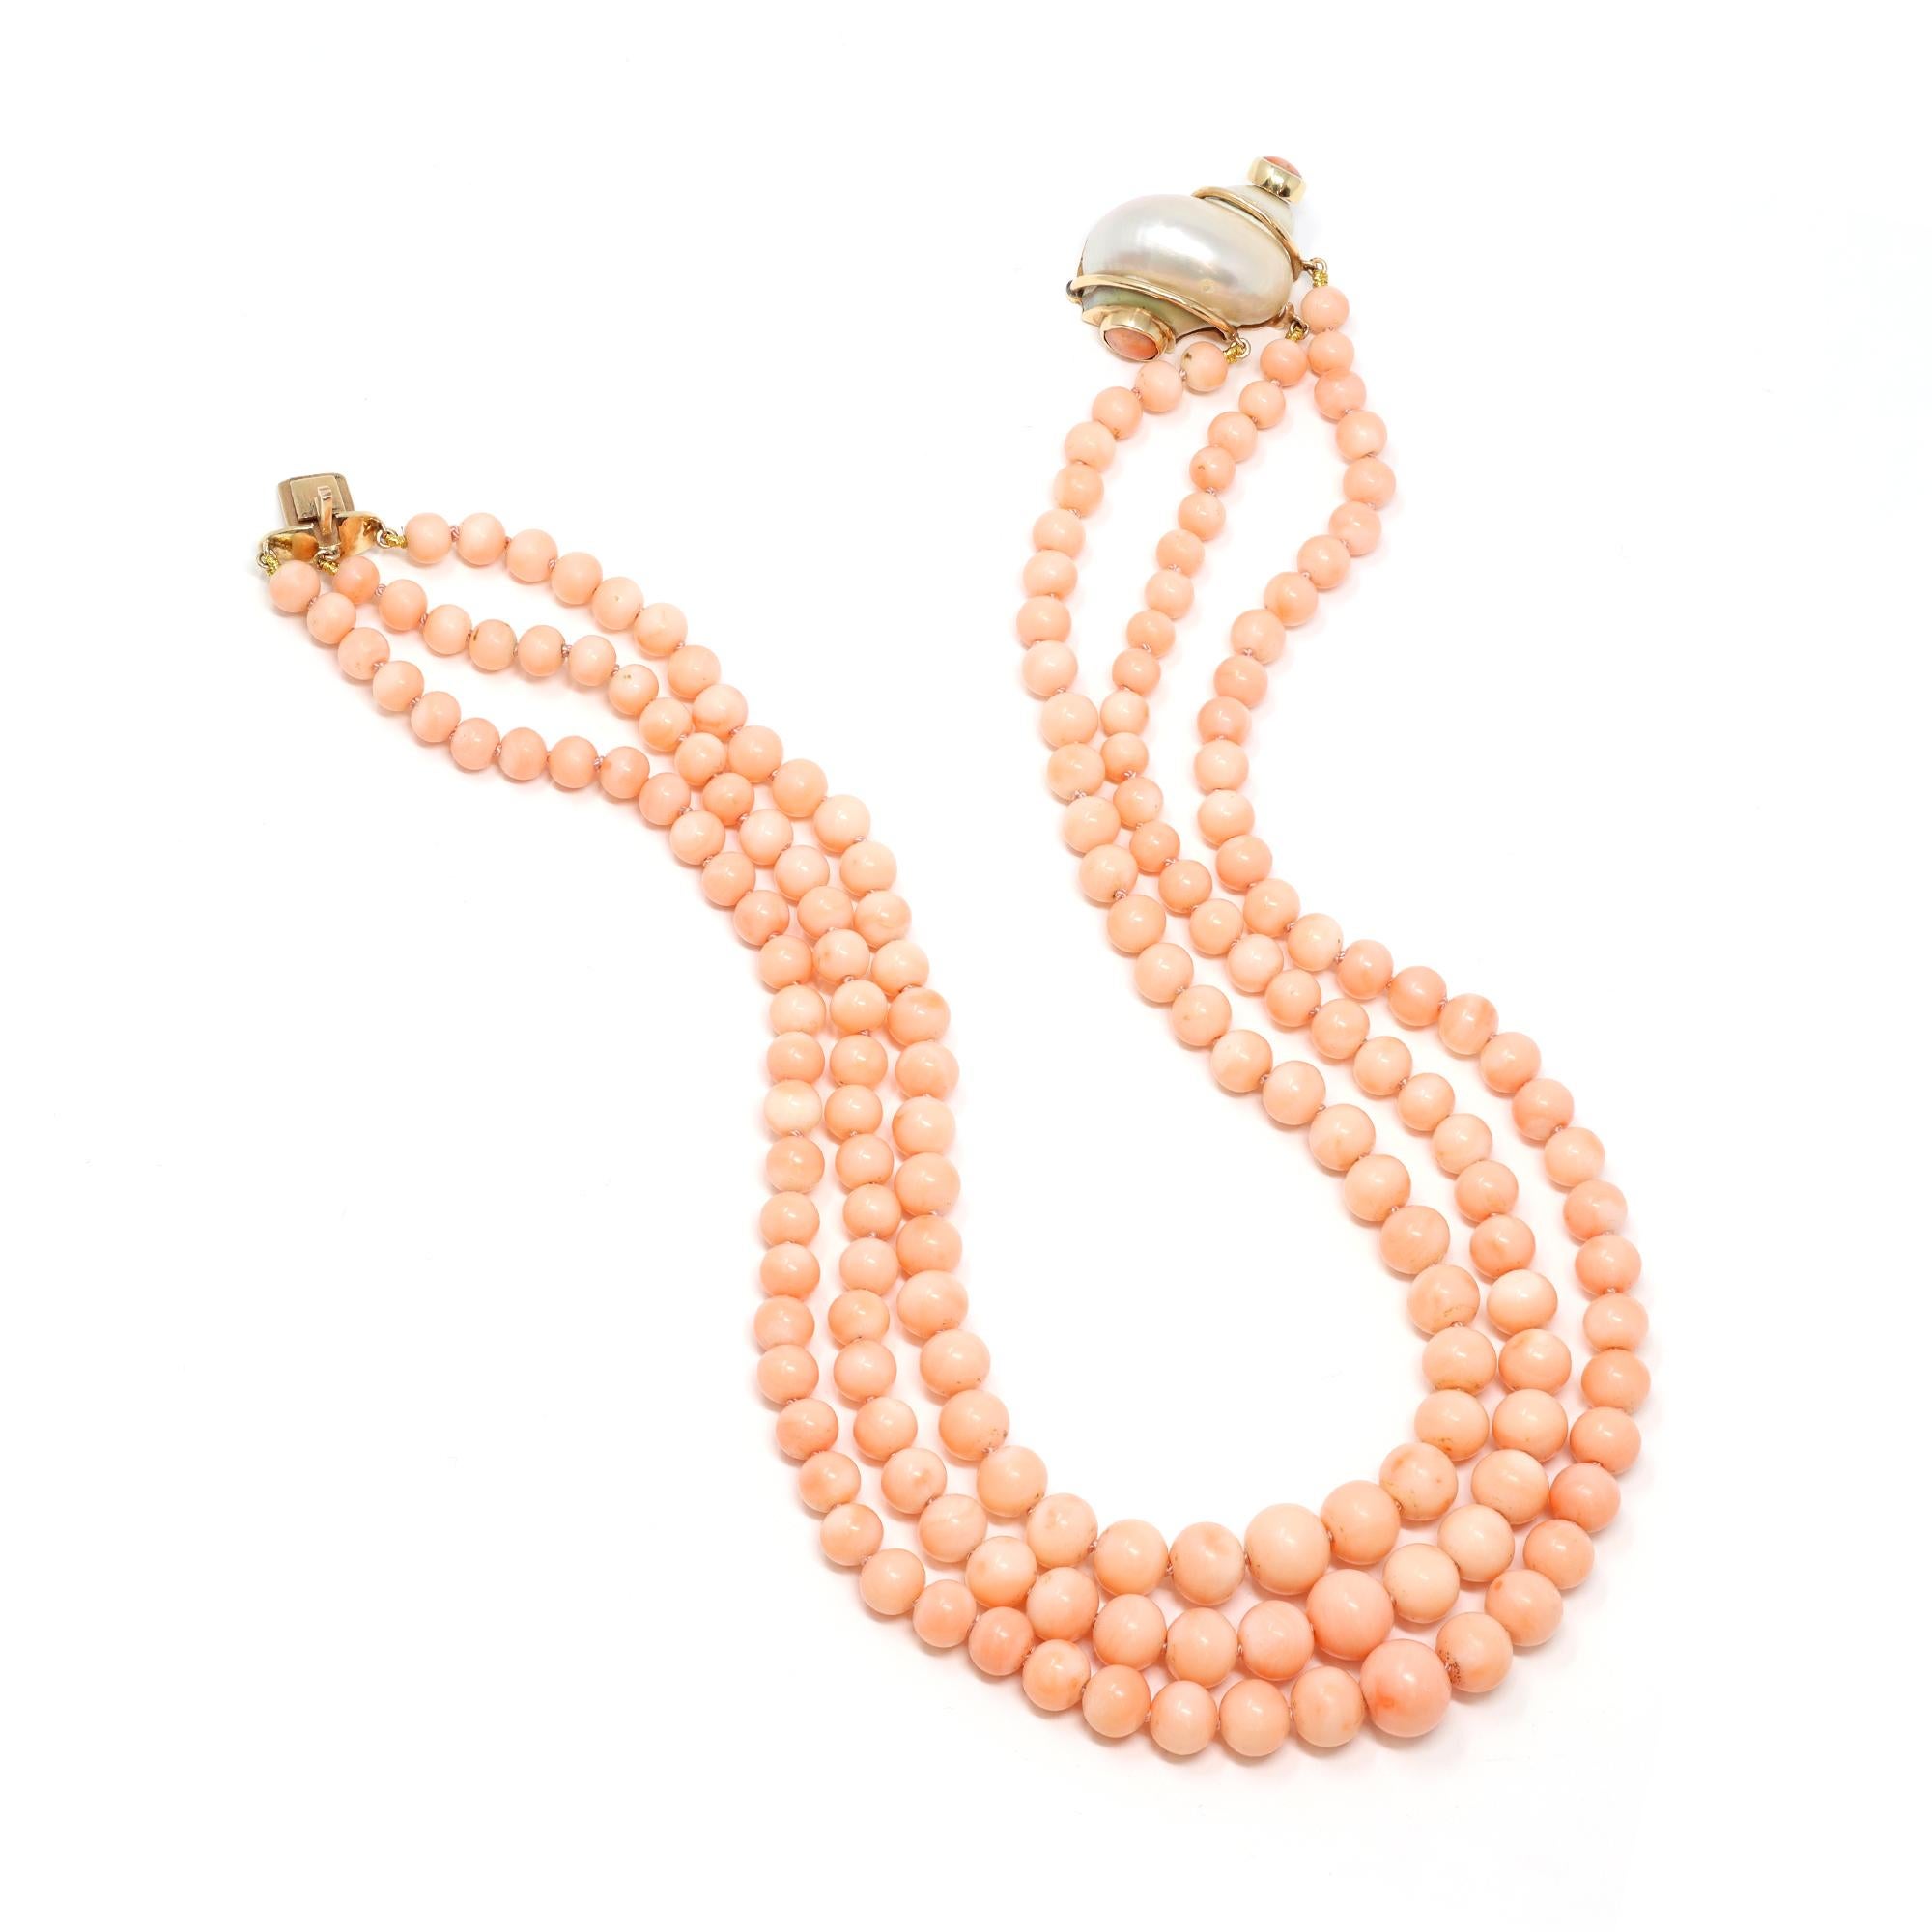 Un collier original en corail, rare et vintage, avec des perles de corail en forme de peau d'ange, disposées en trois brins, avec un fermoir unique en forme de coquillage présentant un cabochon de corail assorti aux deux extrémités. Les perles de